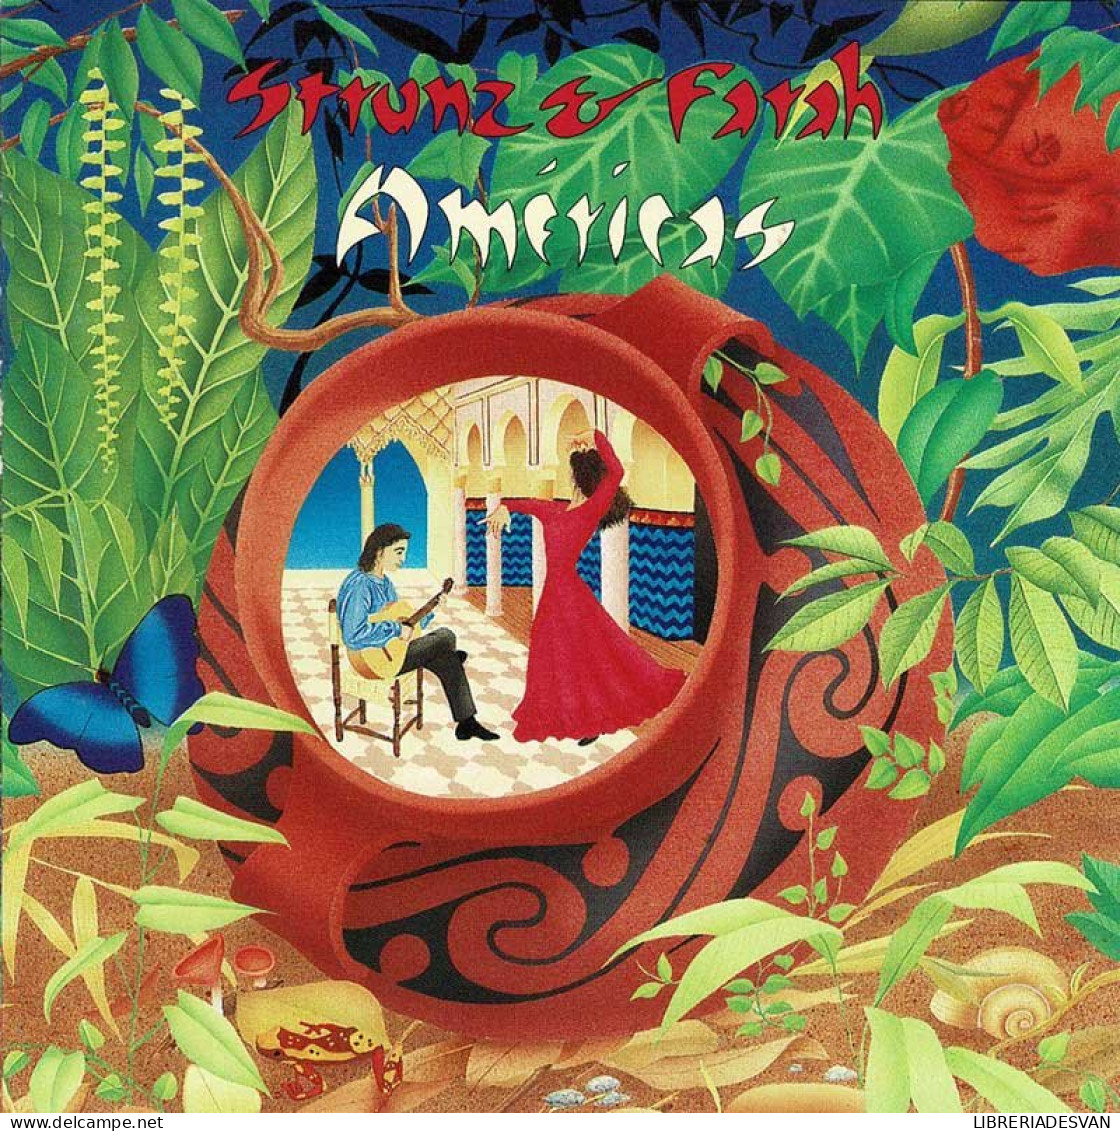 Strunz & Farah - Américas. CD - Sonstige - Spanische Musik